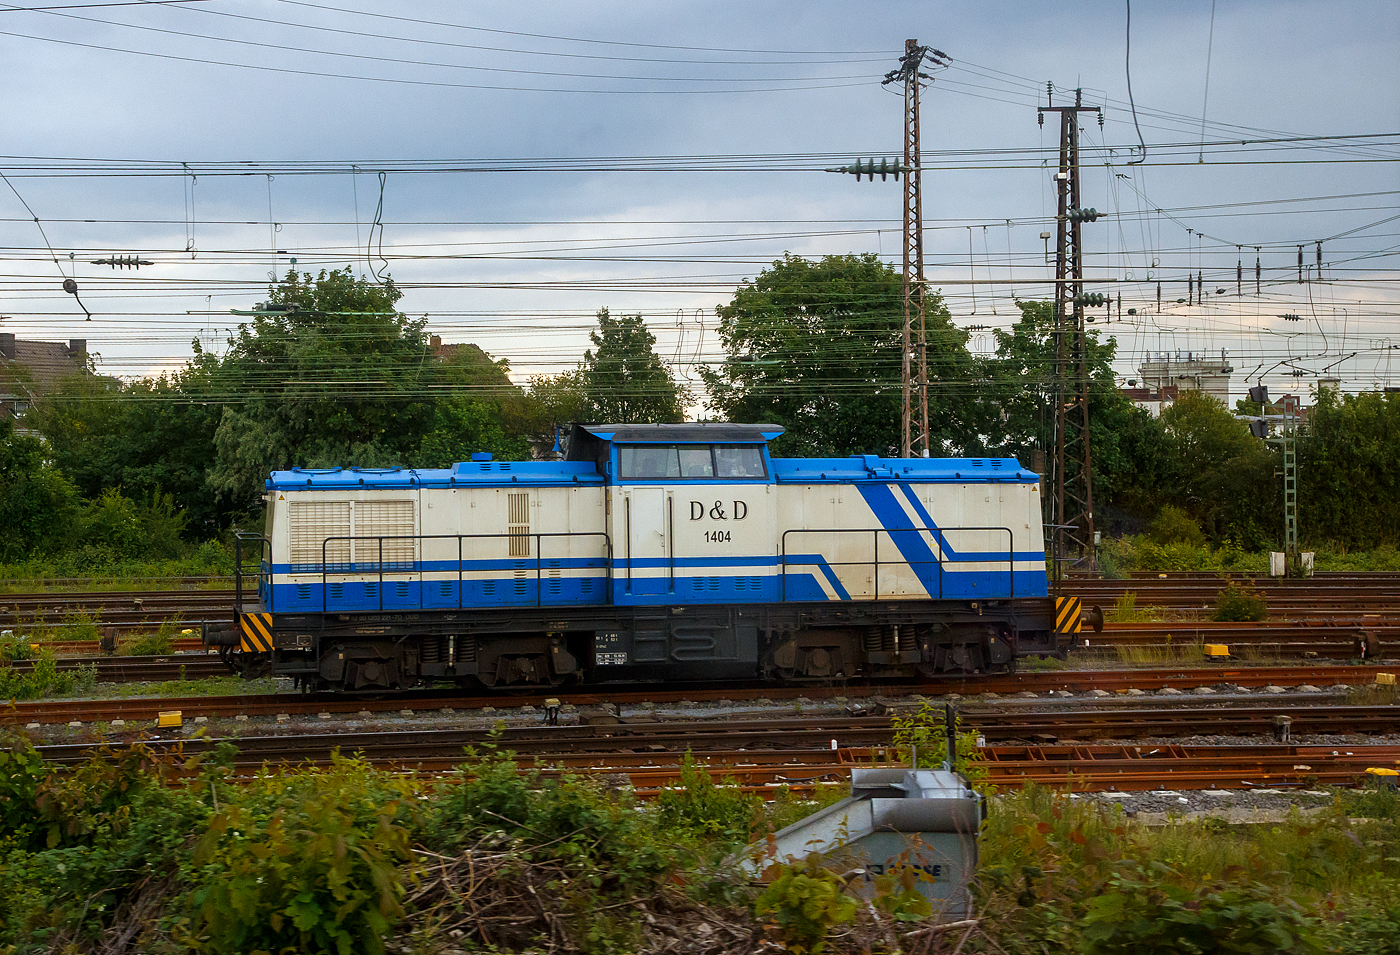 Die D&D 1404 bzw. 203 221-7 (92 80 1203 221-7 D-DUD) der D&D Eisenbahngesellschaft mbH (Hagenow), ex DB 202 735-7, ex DR 112 735-6, ex DR 110 736-8, steht am 31.05.2022 beim Bahnhof Hamm (Westf.). Aufnahme aus dem Zug heraus.

Die Diesellok eine DR V 100.1 wurde 1973 von LEW (VEB Lokomotivbau Elektrotechnische Werke „Hans Beimler“, Hennigsdorf) unter der Fabriknummer 14436 gebaut und als DR 110 735-8 an die Deutsche Reichsbahn ausgeliefert. 1986 erfolgte bereits eine Remotorisierung/Umbau im Bw Dresden und die Umzeichnung in DR 112 735-6. Zum 01.01.1992 erfolgte die Umzeichnung in DR 202 735-8 und zum 01.01.1994 dann DB AG. Die Ausmusterung bei der DB erfolgte 2001und sie ging sie die SFZ - Schienenfahrzeugzentrum (später ALS) Stendal. Von der ALS - ALSTOM Lokomotiven Service GmbH in Stendal erfolgte dann der Umbau (teilmodernisiert) in die heutige 203 221-7. Im Jahr  2006 wurde sie an die D&D Eisenbahngesellschaft mbH (Hagenow) verkauft und hat seit 2007 die UIC-Nummer 92 80 1203 221-7 D-DUD. 

TECHNISCHE DATEN:
Spurweite: 1.435 mm (Normalspur)
Achsanordnung: B'B'
Länge über Puffer: 14.240mm
Radsatzabstand im Drehgestell: 2.300mm
Drehzapfenabstand: 7.000mm
Höhe über SO: 4.255mm
Dienstgewicht: 68 t

Motor: 12-Zylinder CATERPILLAR-Dieselmotor mit Direkteinspritzung, Abgasturbolader und Ladeluftkühlung, vom Typ CAT 3512 DI-TA
Motorleistung: 1.082 kW (1.472 PS)
Nenndrehzahl: 1.800 U/min
Hubraum: 51,8 Liter (Bohrung-Ø 170 x Hub 190 mm)
Motorgewicht: 6.537 kg

Getriebe: Voith Strömungsgetriebe GSR 30/5,7
Leistungsübertragung: dieselhydraulisch
Anfahrzugkraft: 207 kN
Höchstgeschwindigkeit: 100 km/h
Kleinste Dauerfahrgeschwindigkeit: 11,1 km/h
Kleinster befahrbarer Gleisbogenradius: 80m